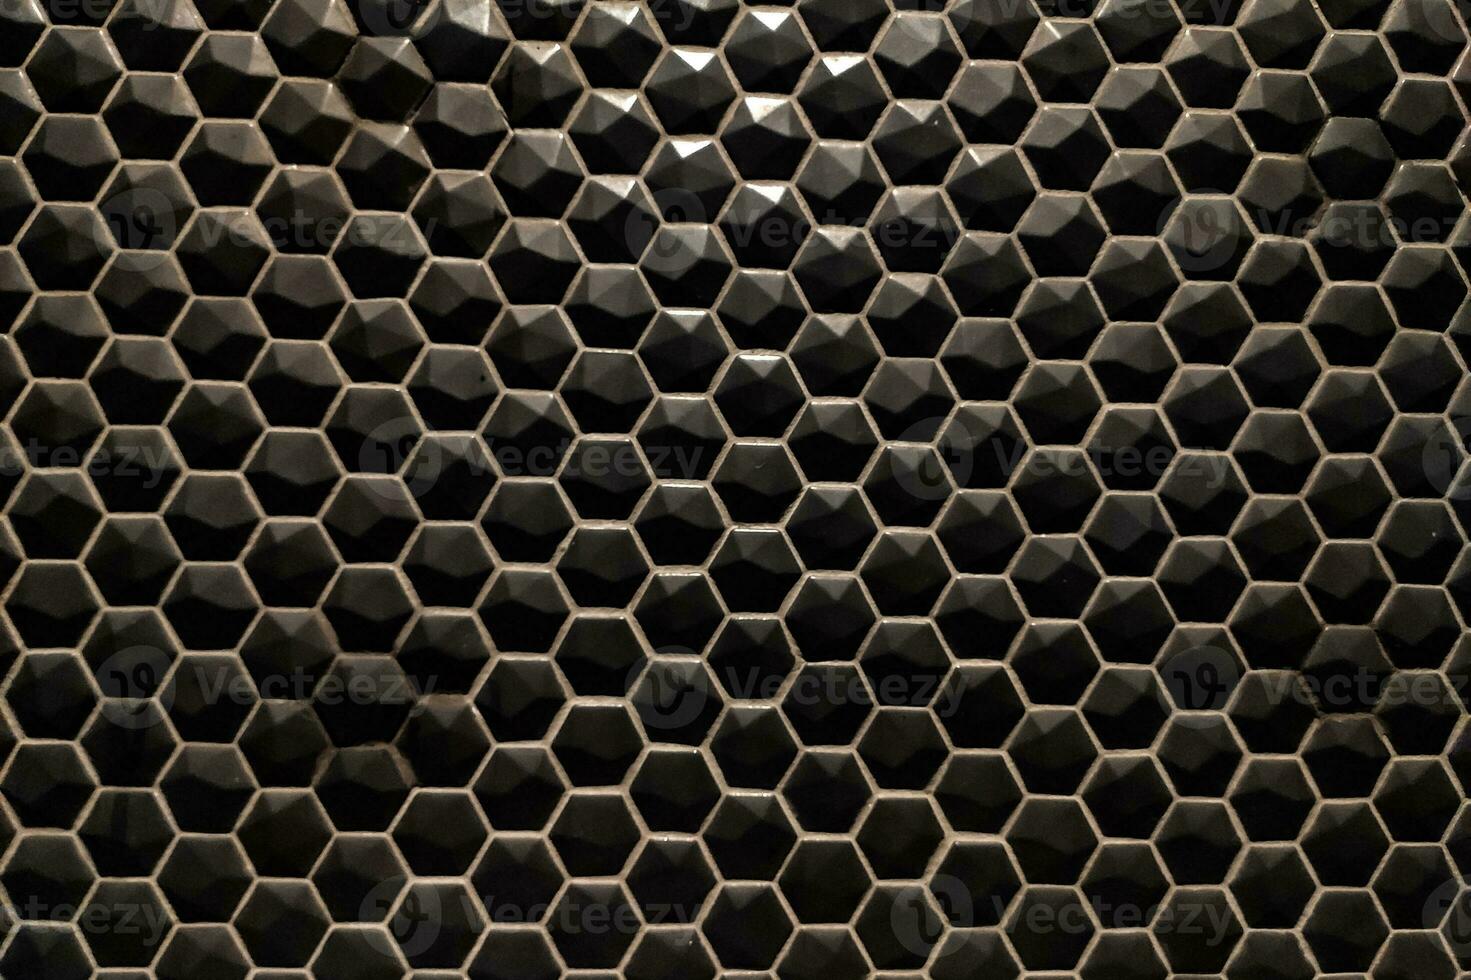 textur av glansig svart mosaik- plattor sexhörning foto